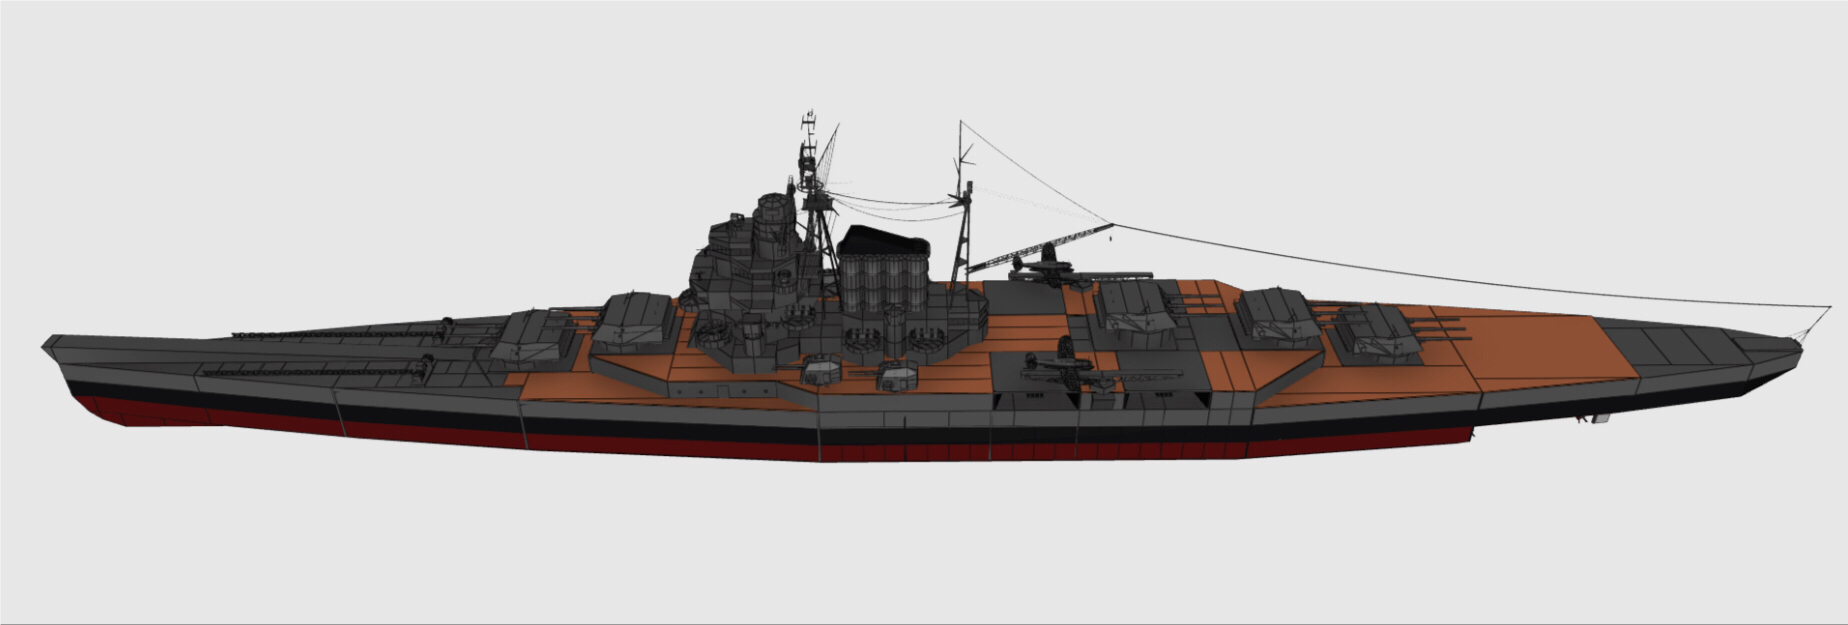 军舰设计 大型巡洋舰 kvc-nemesis (复仇女神)